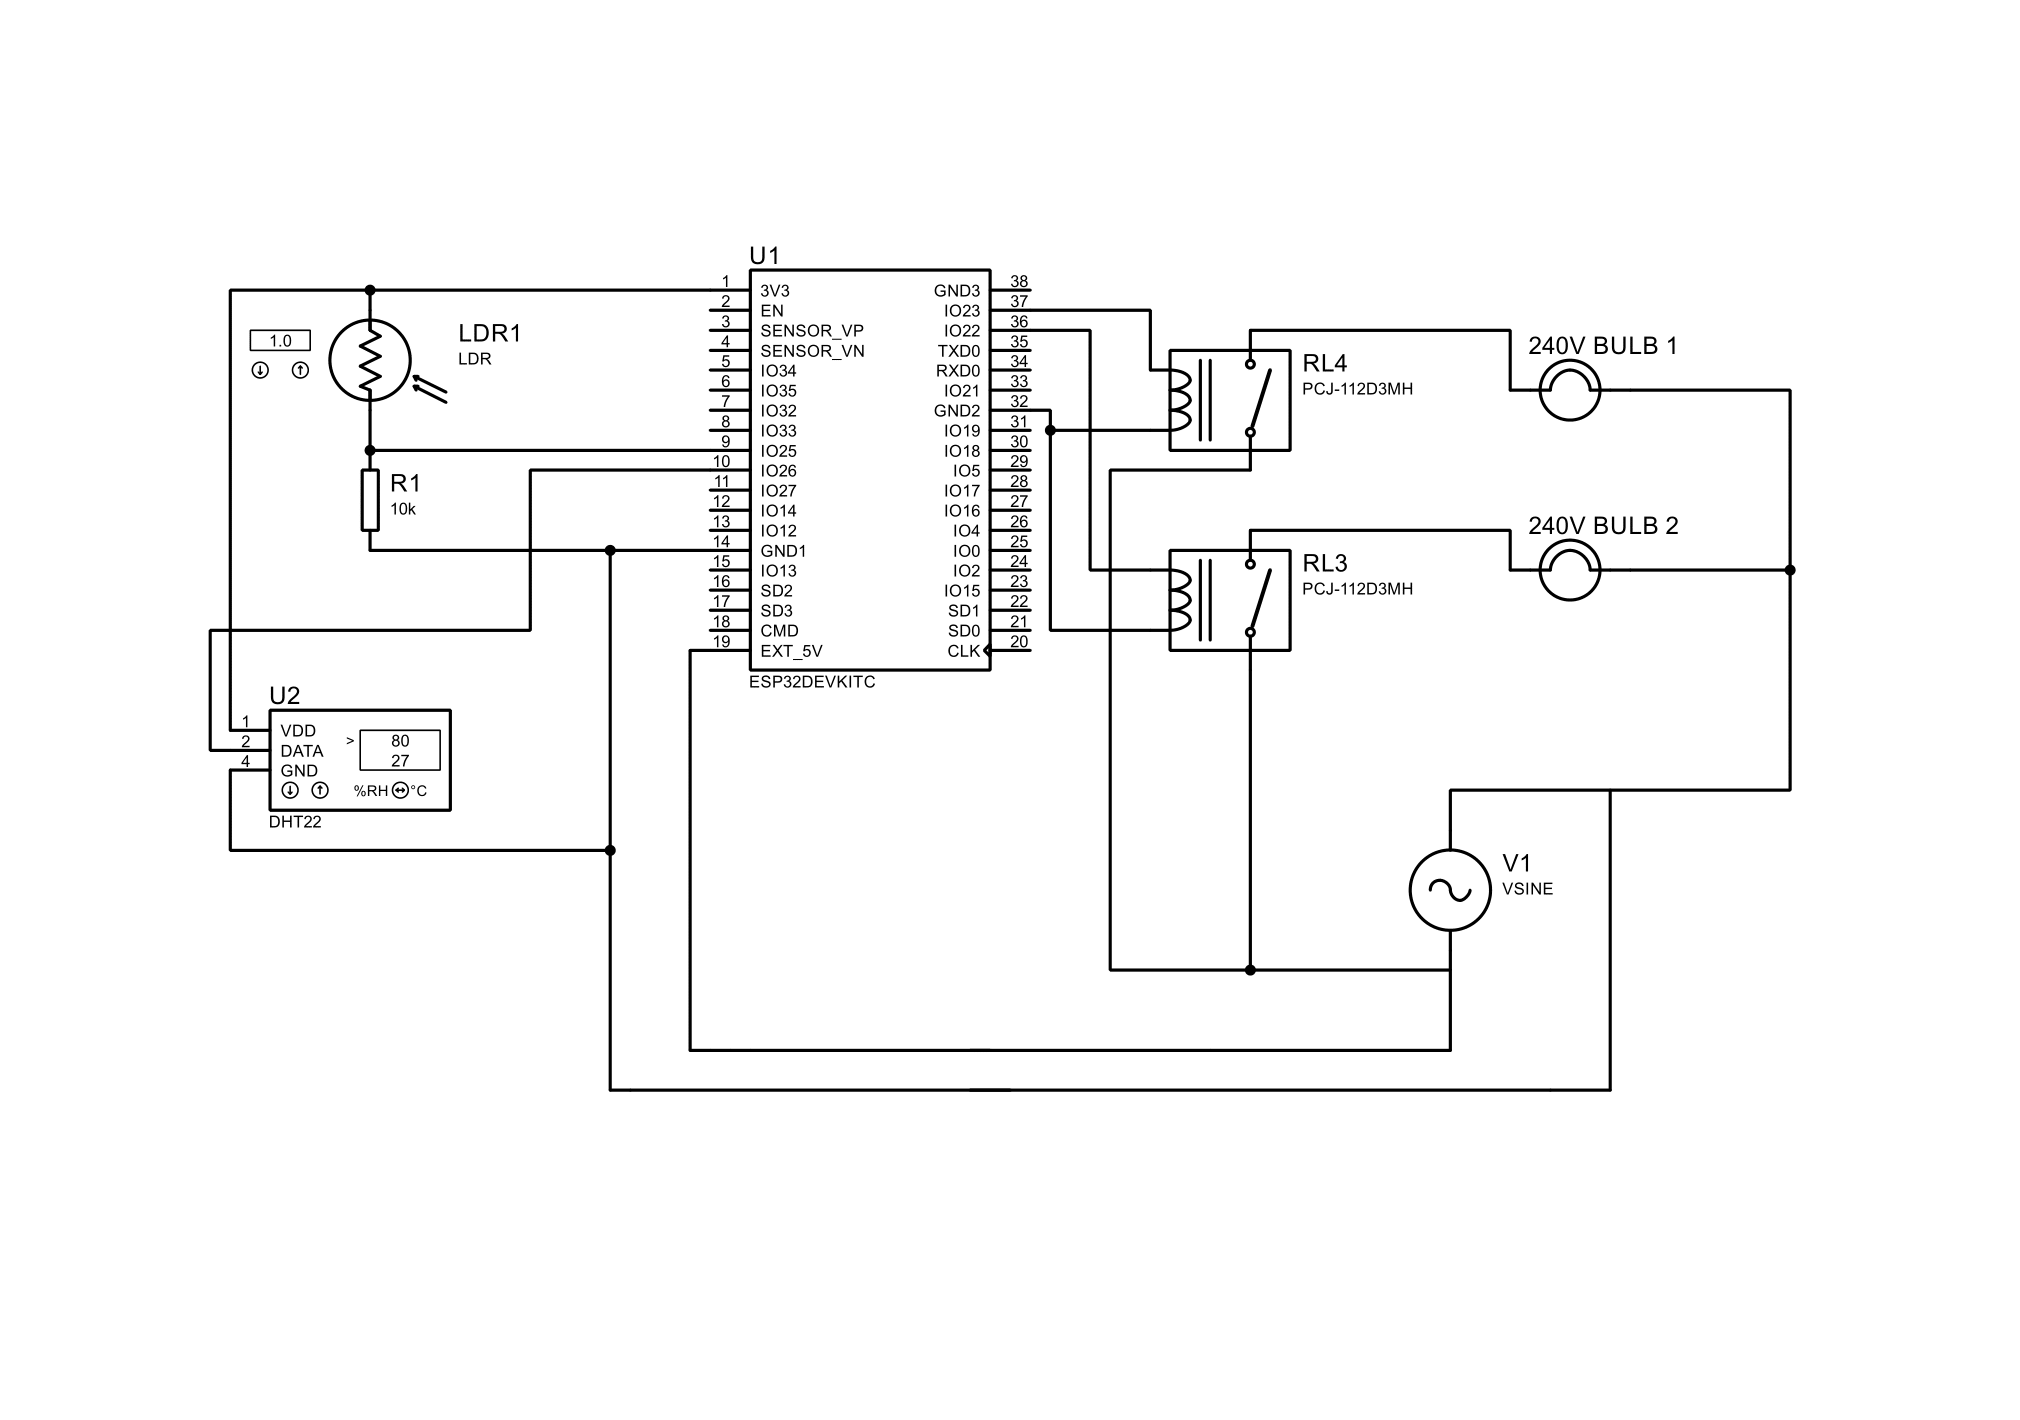 circuitDiagram